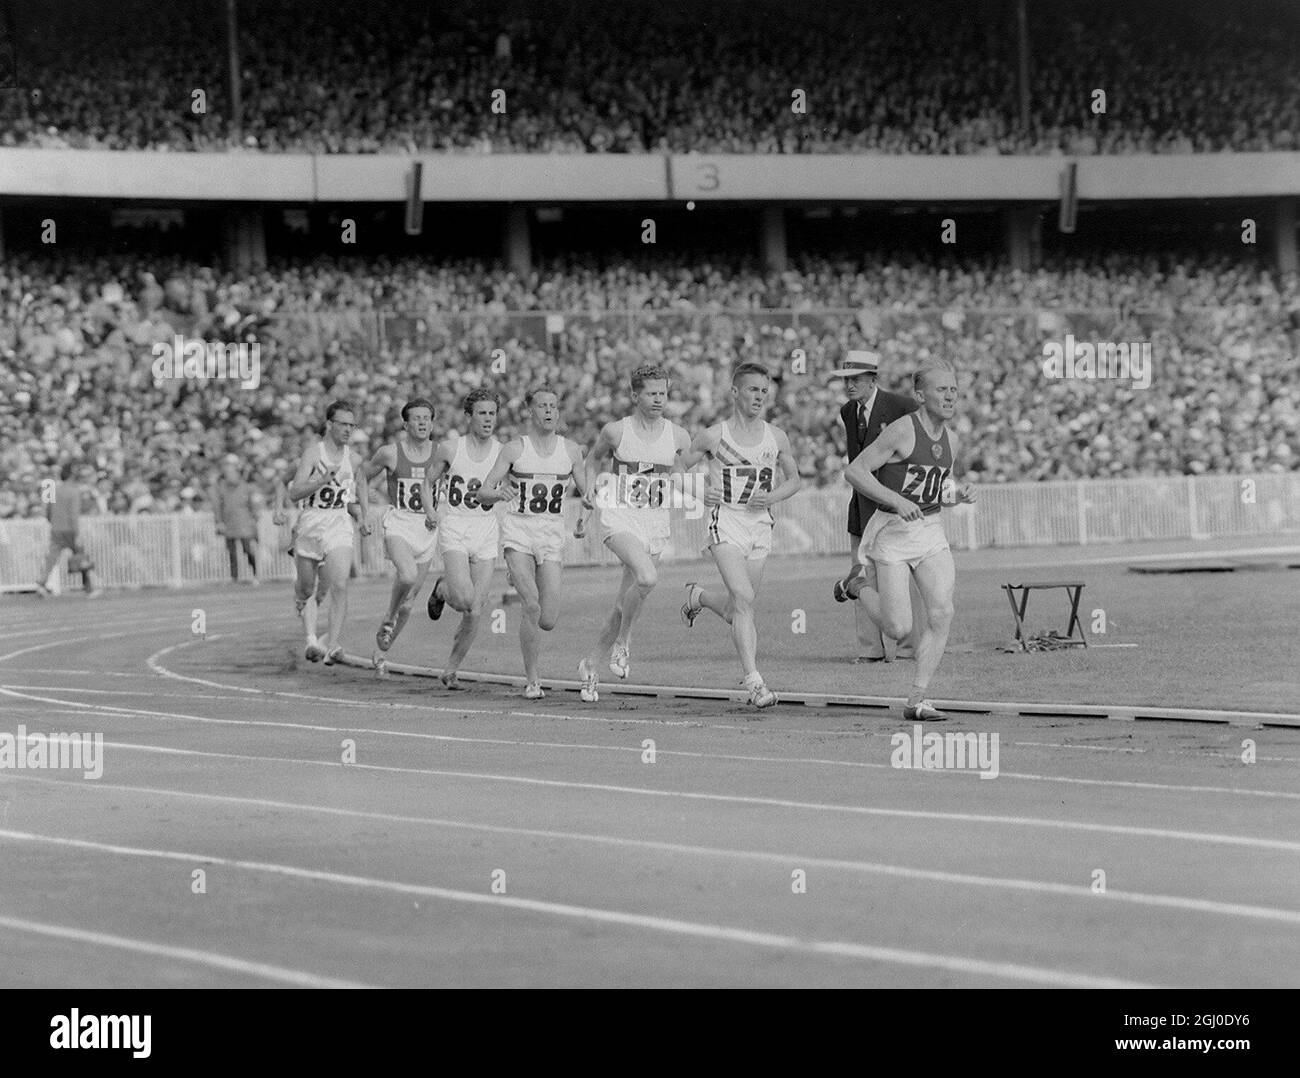 Olympische Spiele in Melbourne 1956 die zweite Runde in Runde eins der 5000-Meter-Rennen. An der Spitze steht Wladimir Kouts aus Russland (200), der den zweiten Platz belegte. Ihm folgt Allan Lawrence aus Australien (178), der in einer Zeit von 14 Minuten und 14.6 Sekunden die Hitze gewann. Andere sind H. Schade von Grmany (186), G.D. Ibbotson von Großbritannien (188), I Tabori von Ungarn (686) und C. Stone von den USA (196). November 1956 Stockfoto